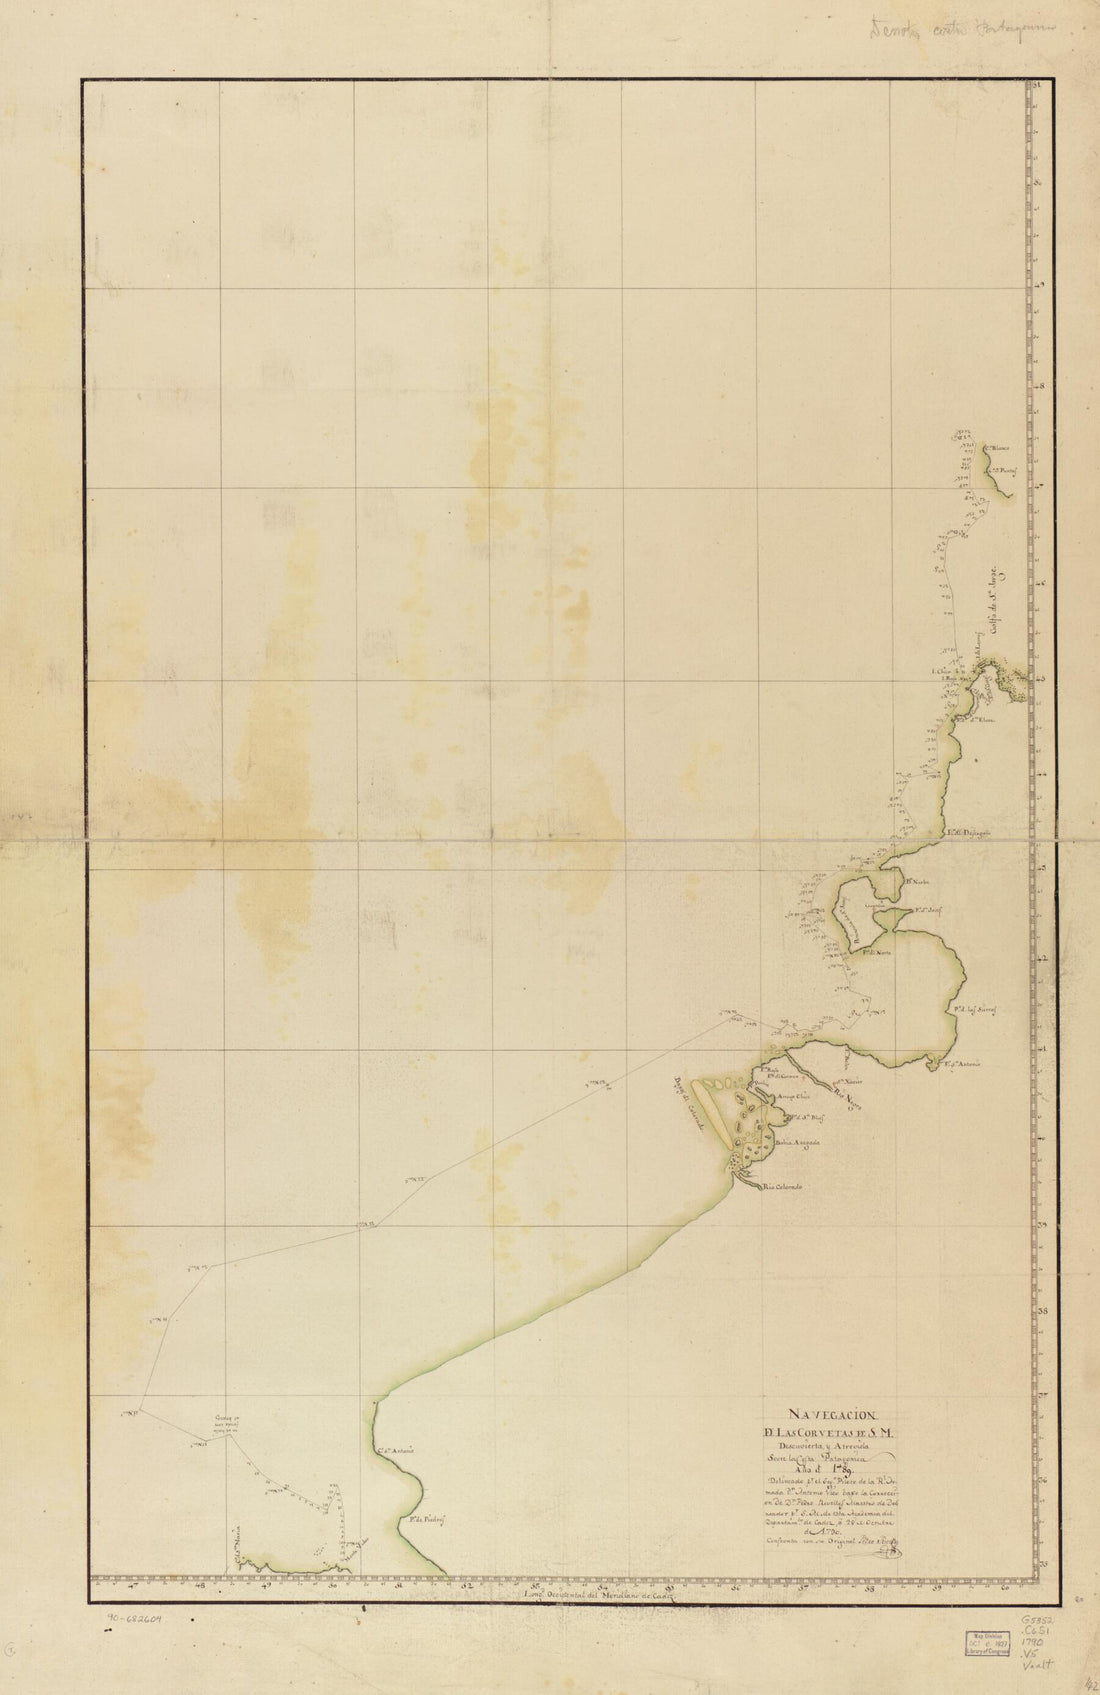 This old map of Navegación De Las Corvetas De S.M. Descuvierta Y Atrevida Sovre La Costa Patagonica, Año D. from 1789 was created by Antonio Vico in 1789